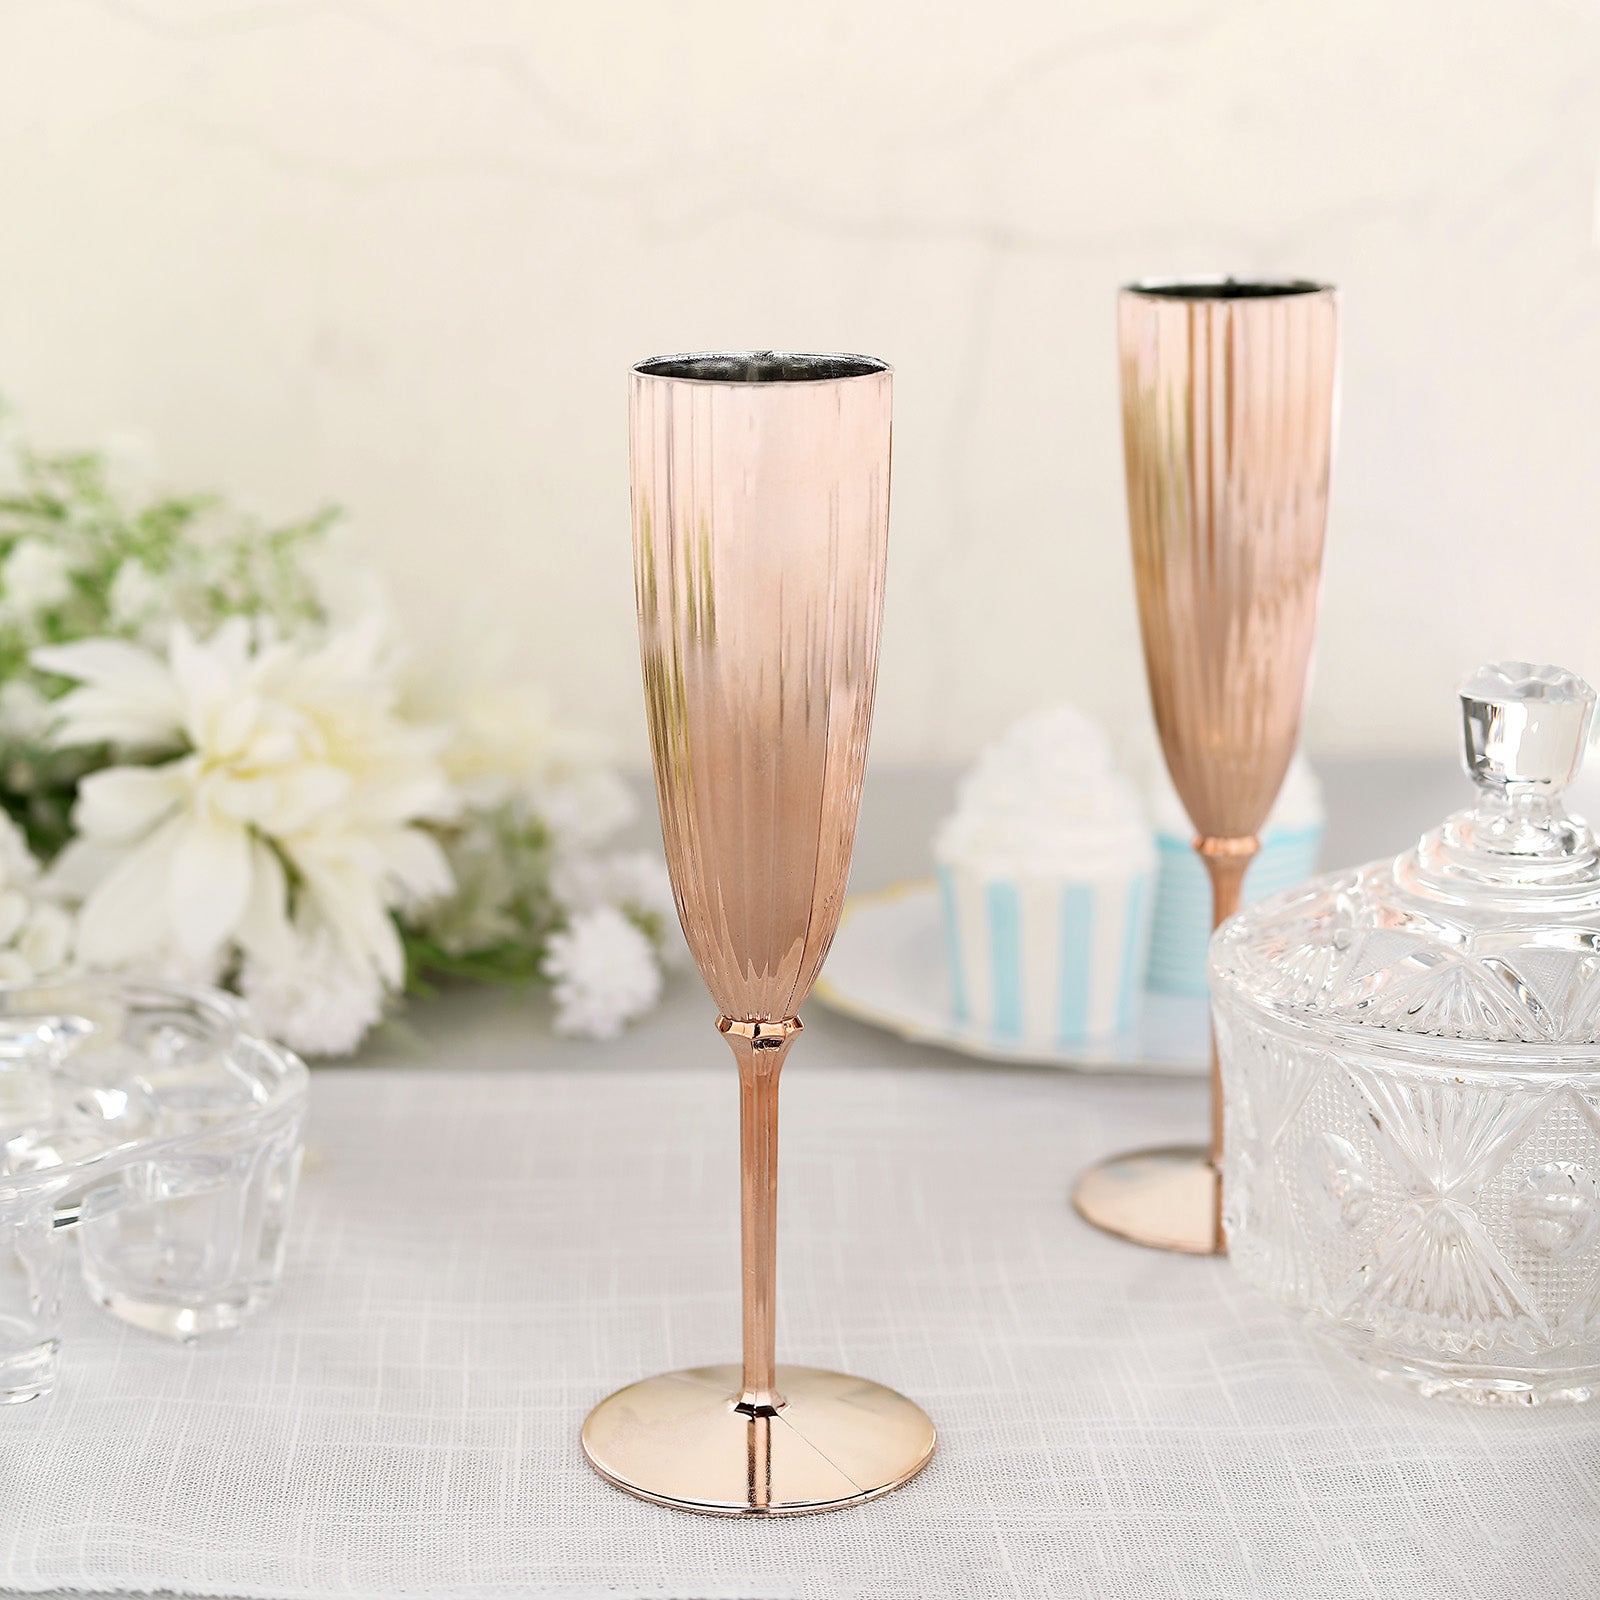 Plastic Champagne Flutes & Glasses